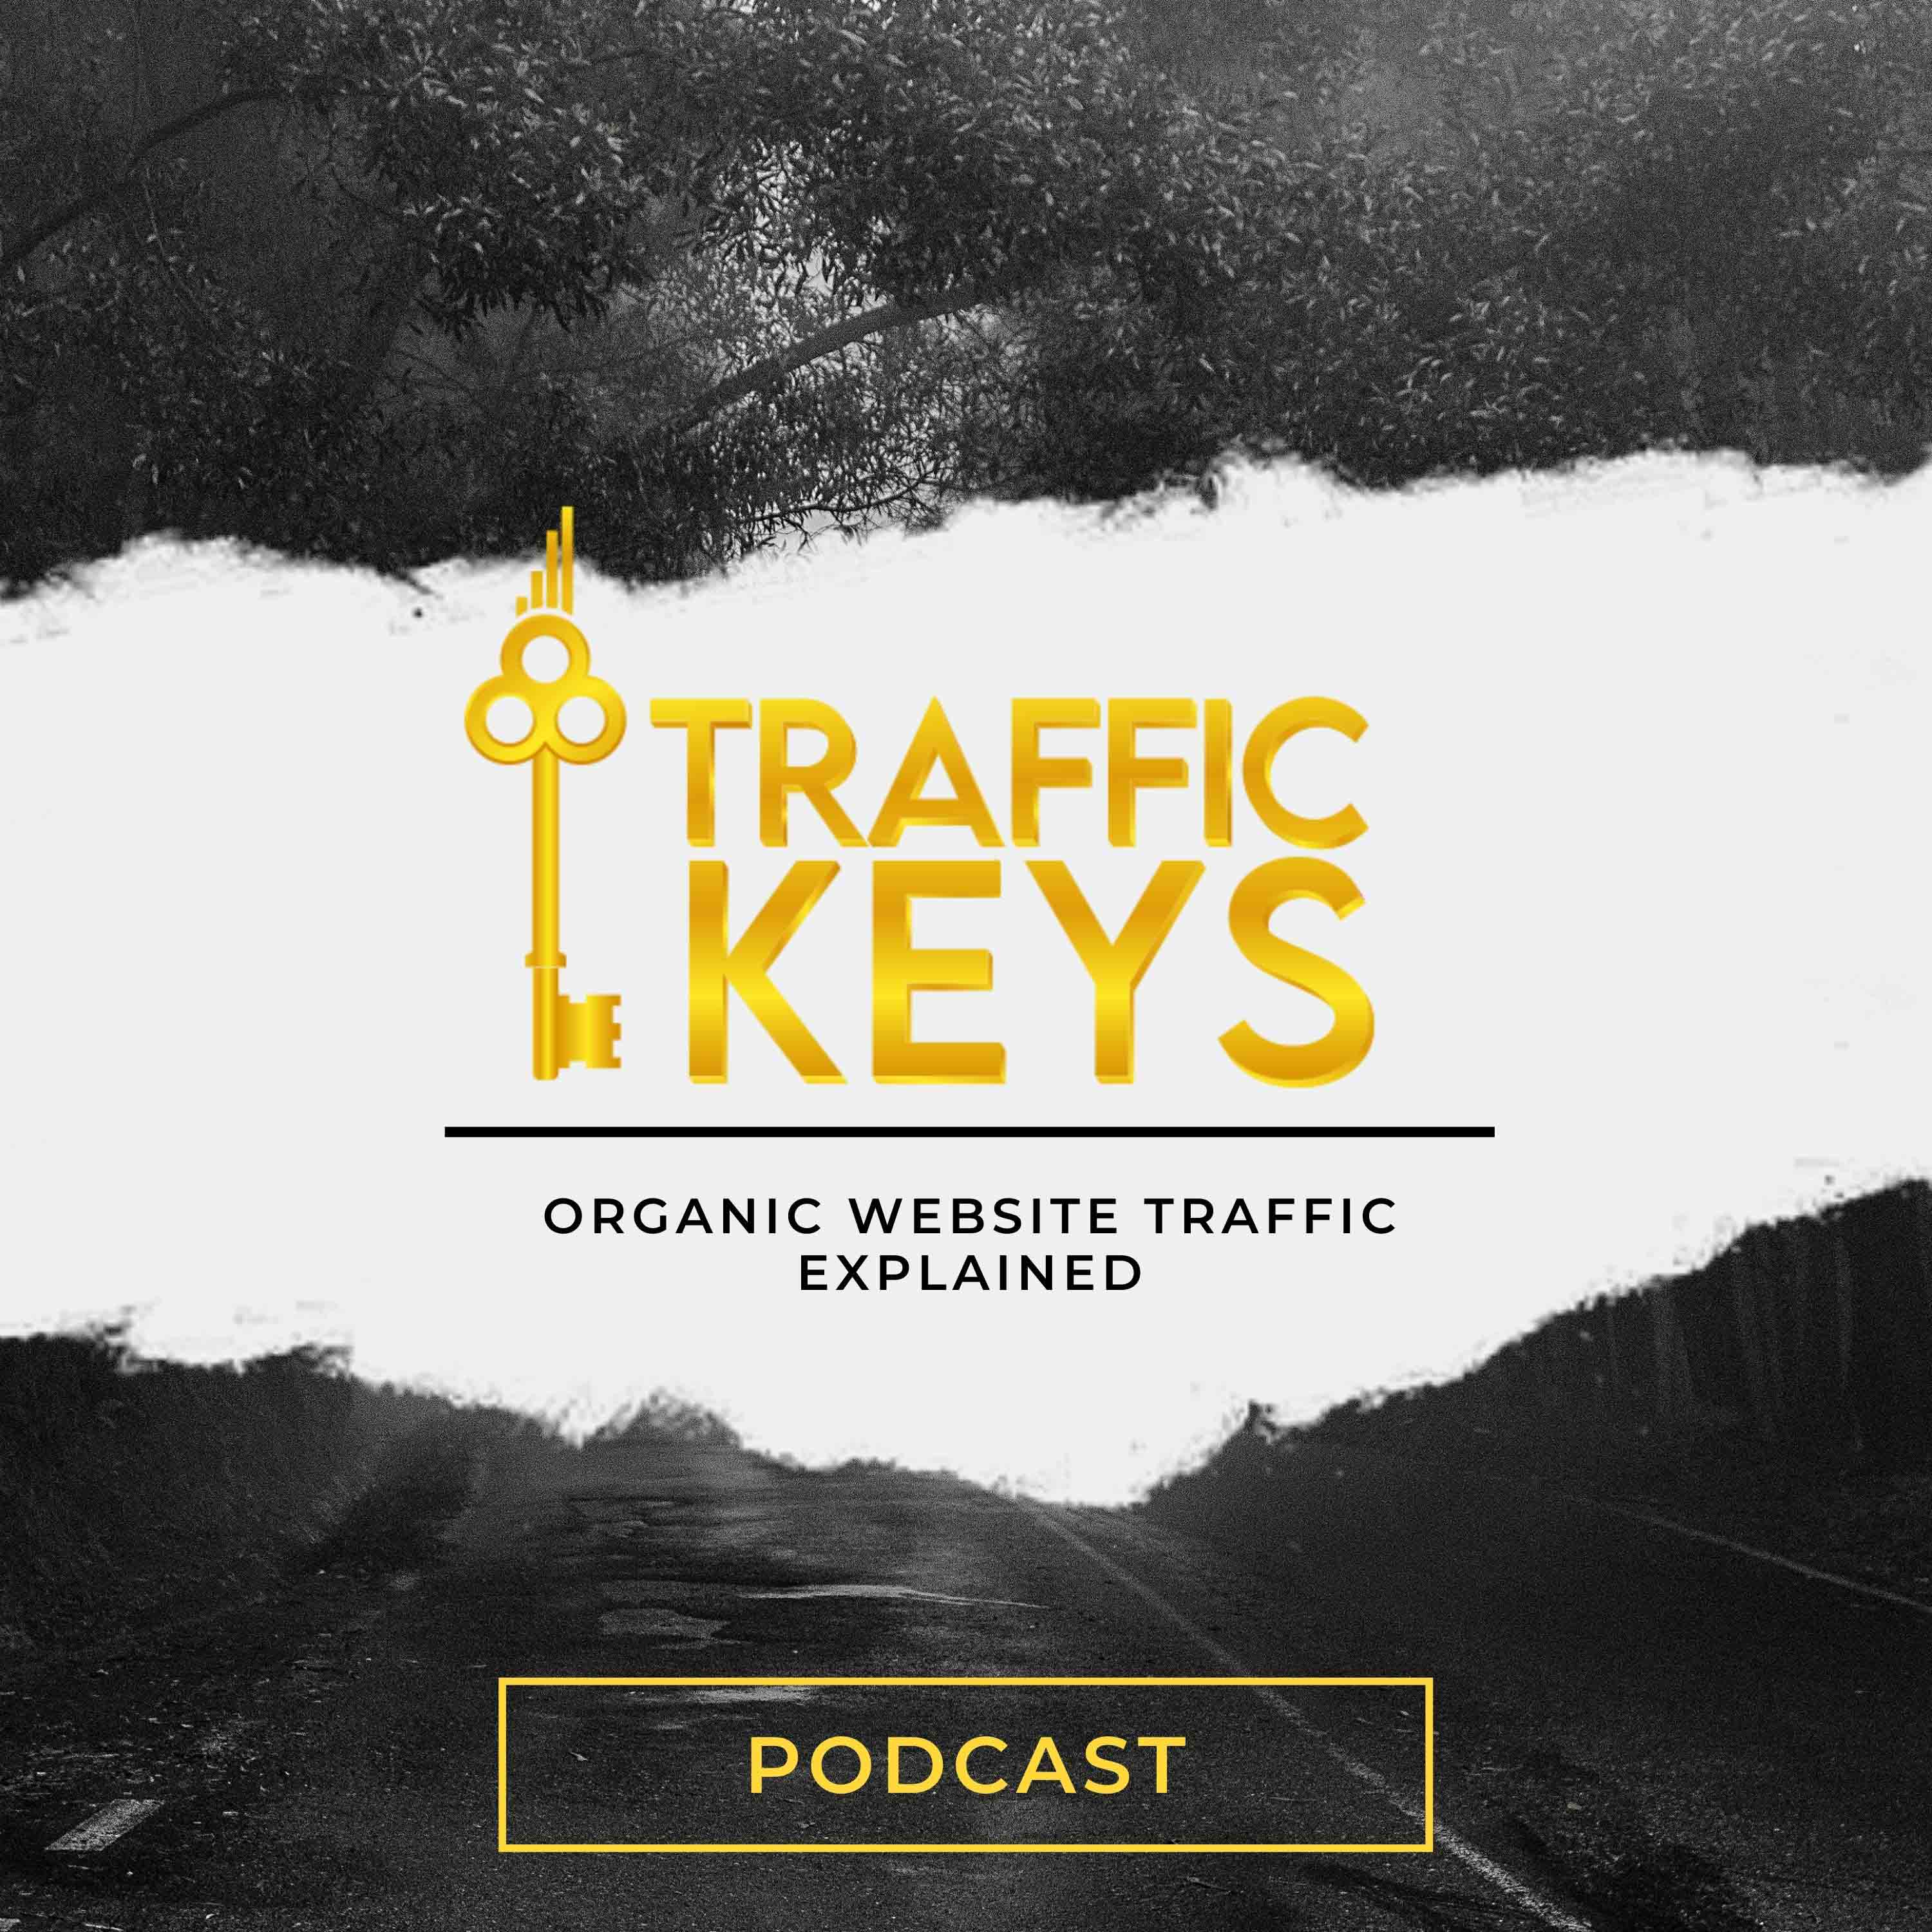 Artwork for podcast Traffic Keys Podcast